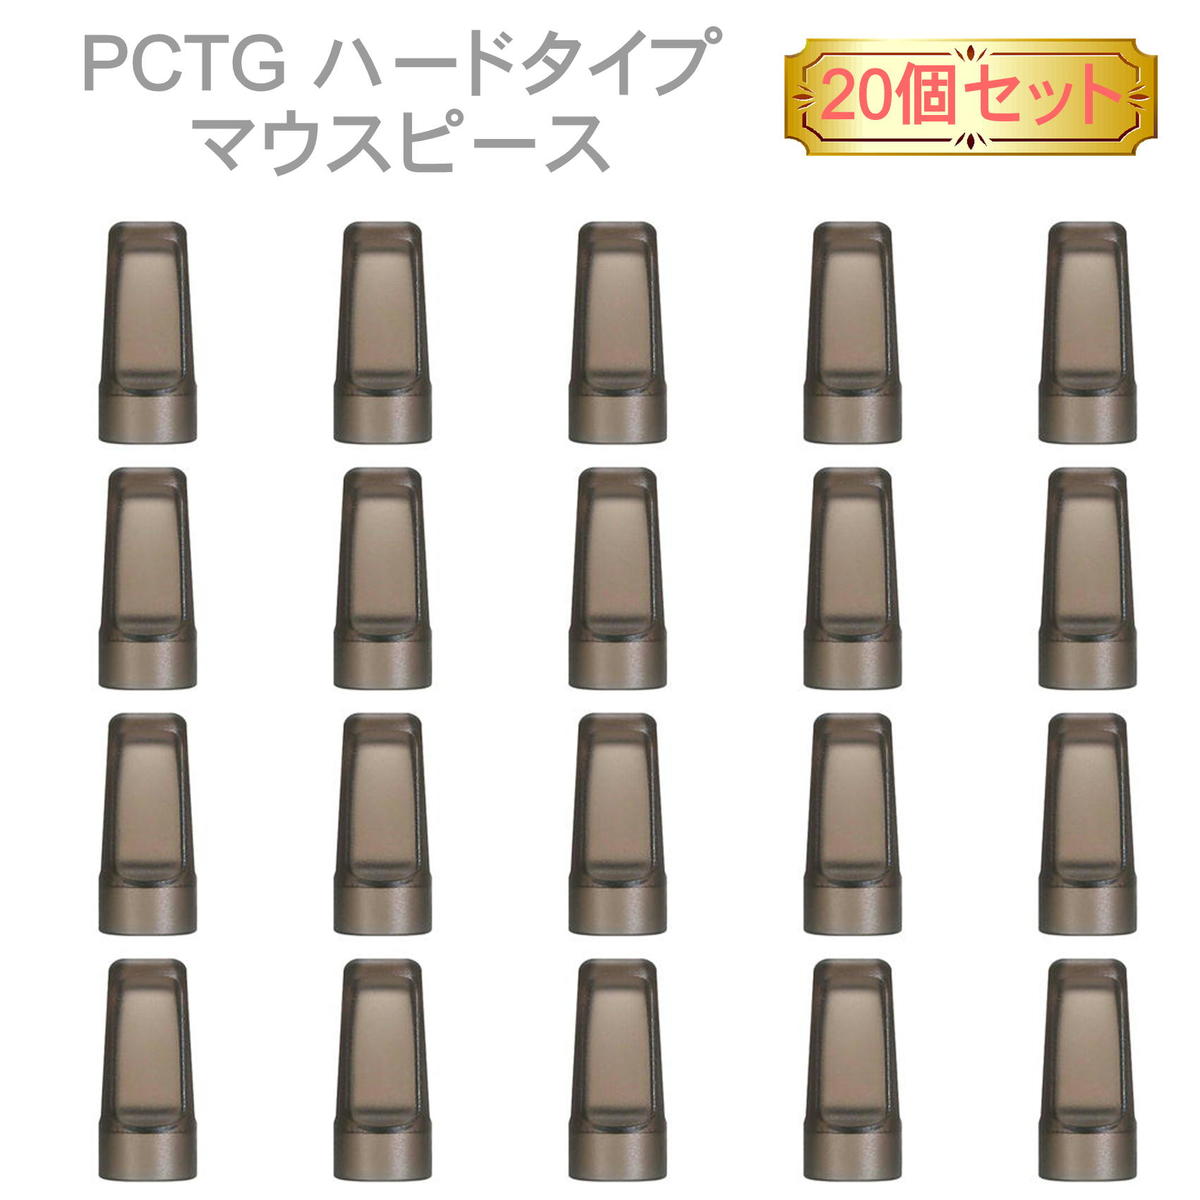 PCTG ハードタイプ マウスピース 20個